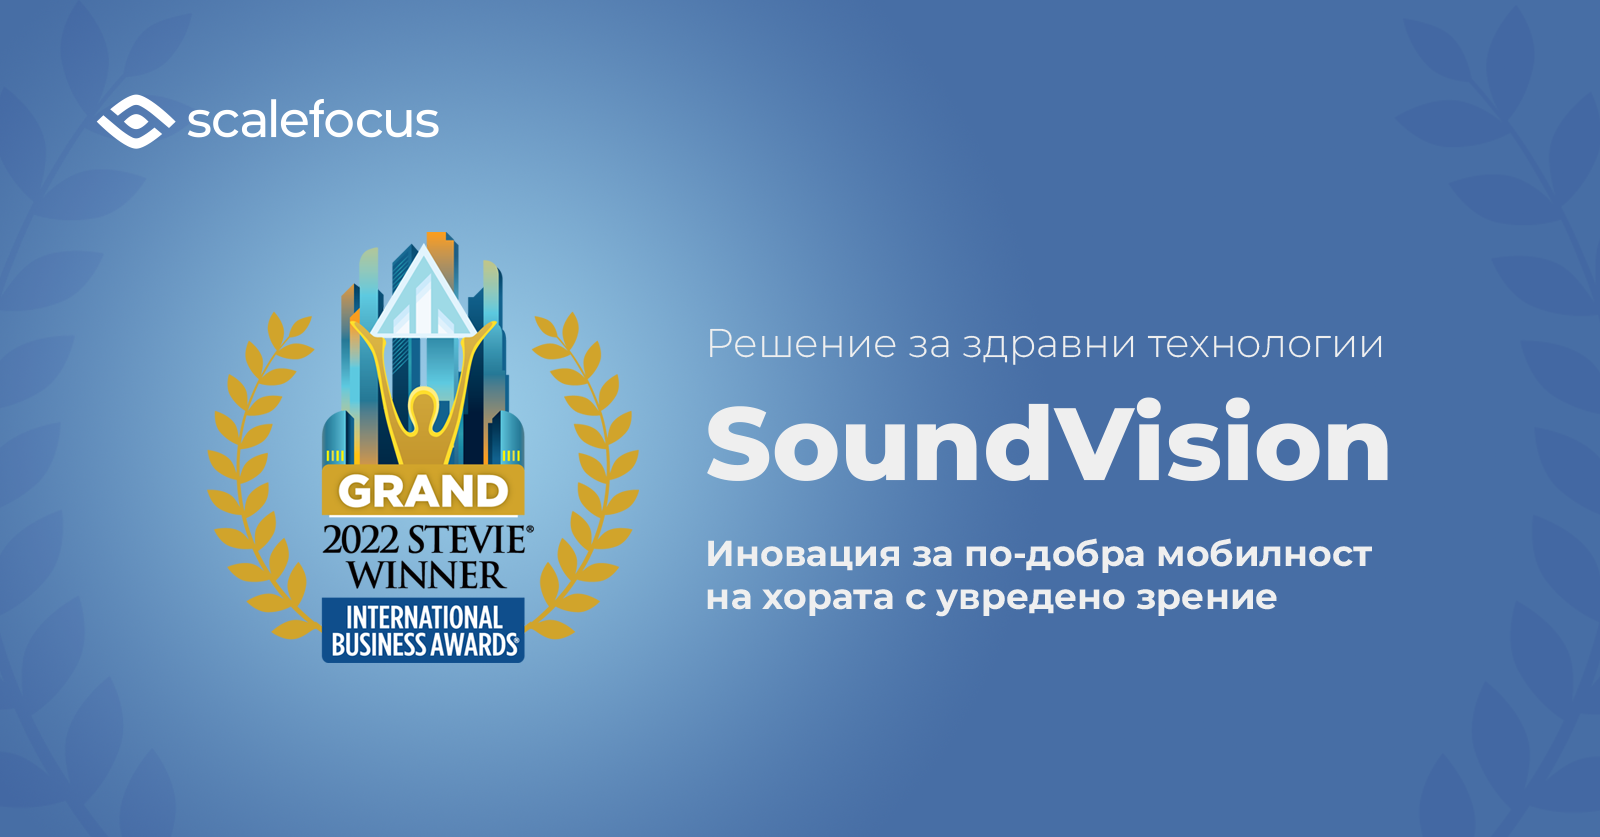 За първи път българска компания печели Grand Stevie по време на Международните бизнес награди